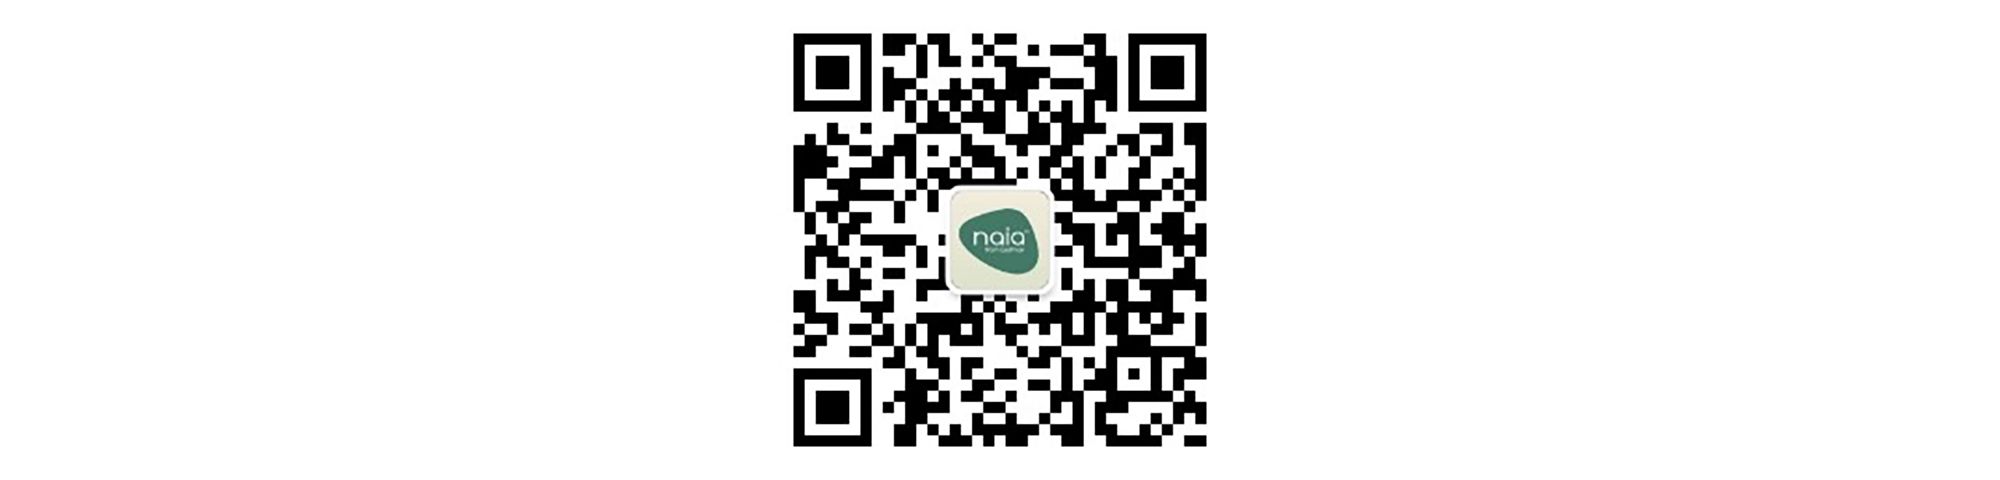 Naia WeChat QR Code 